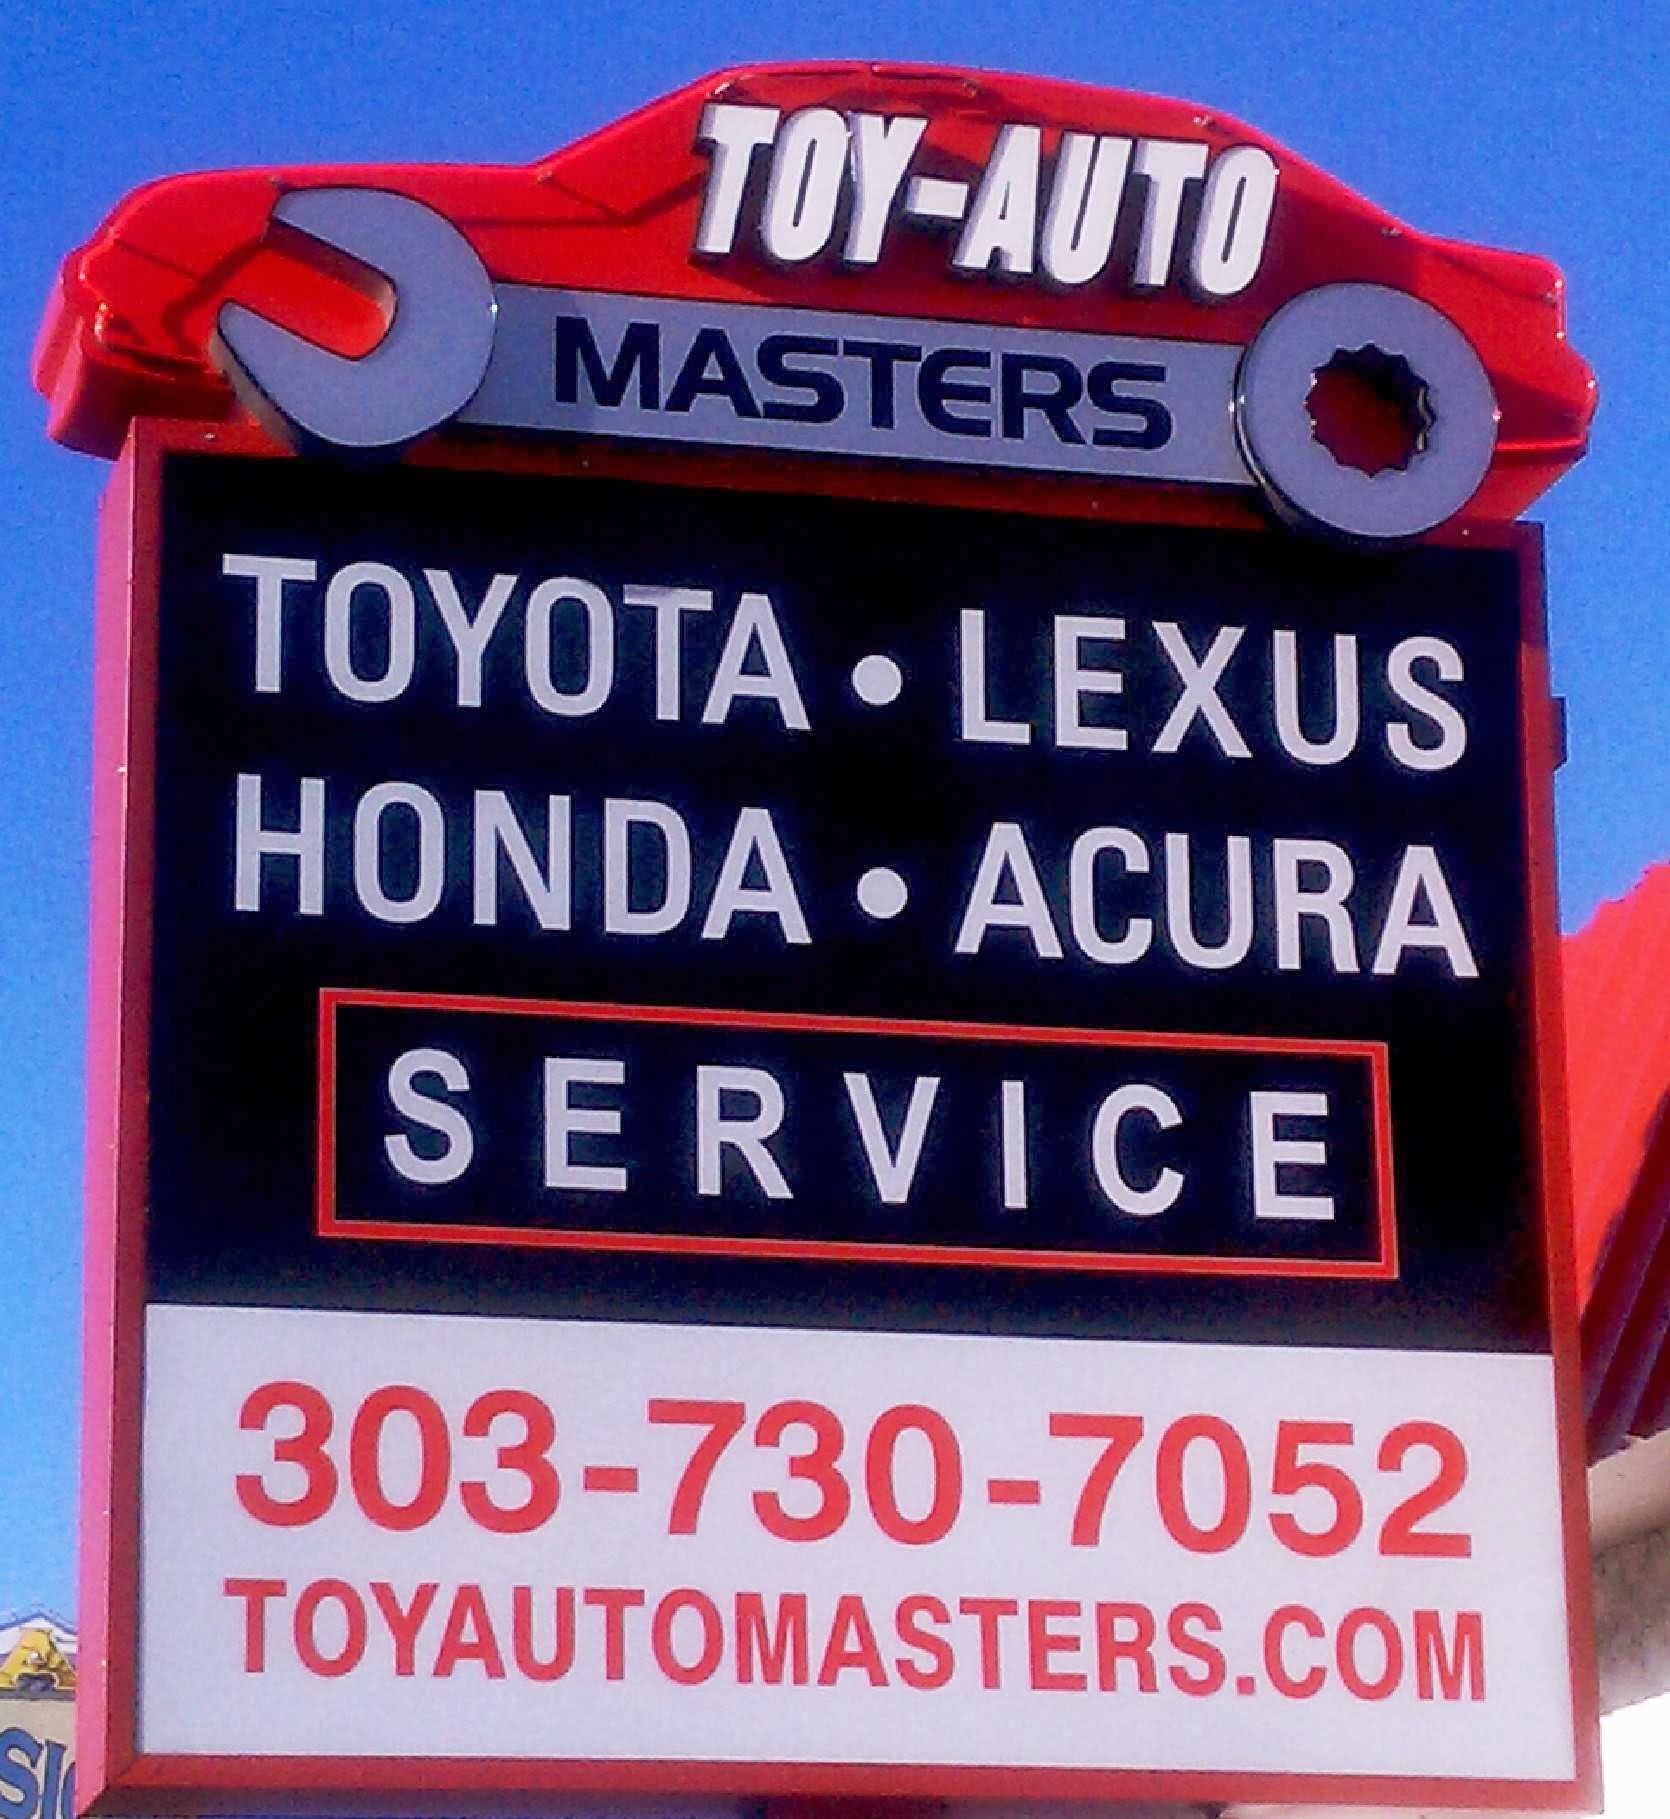 Toy-Auto Masters